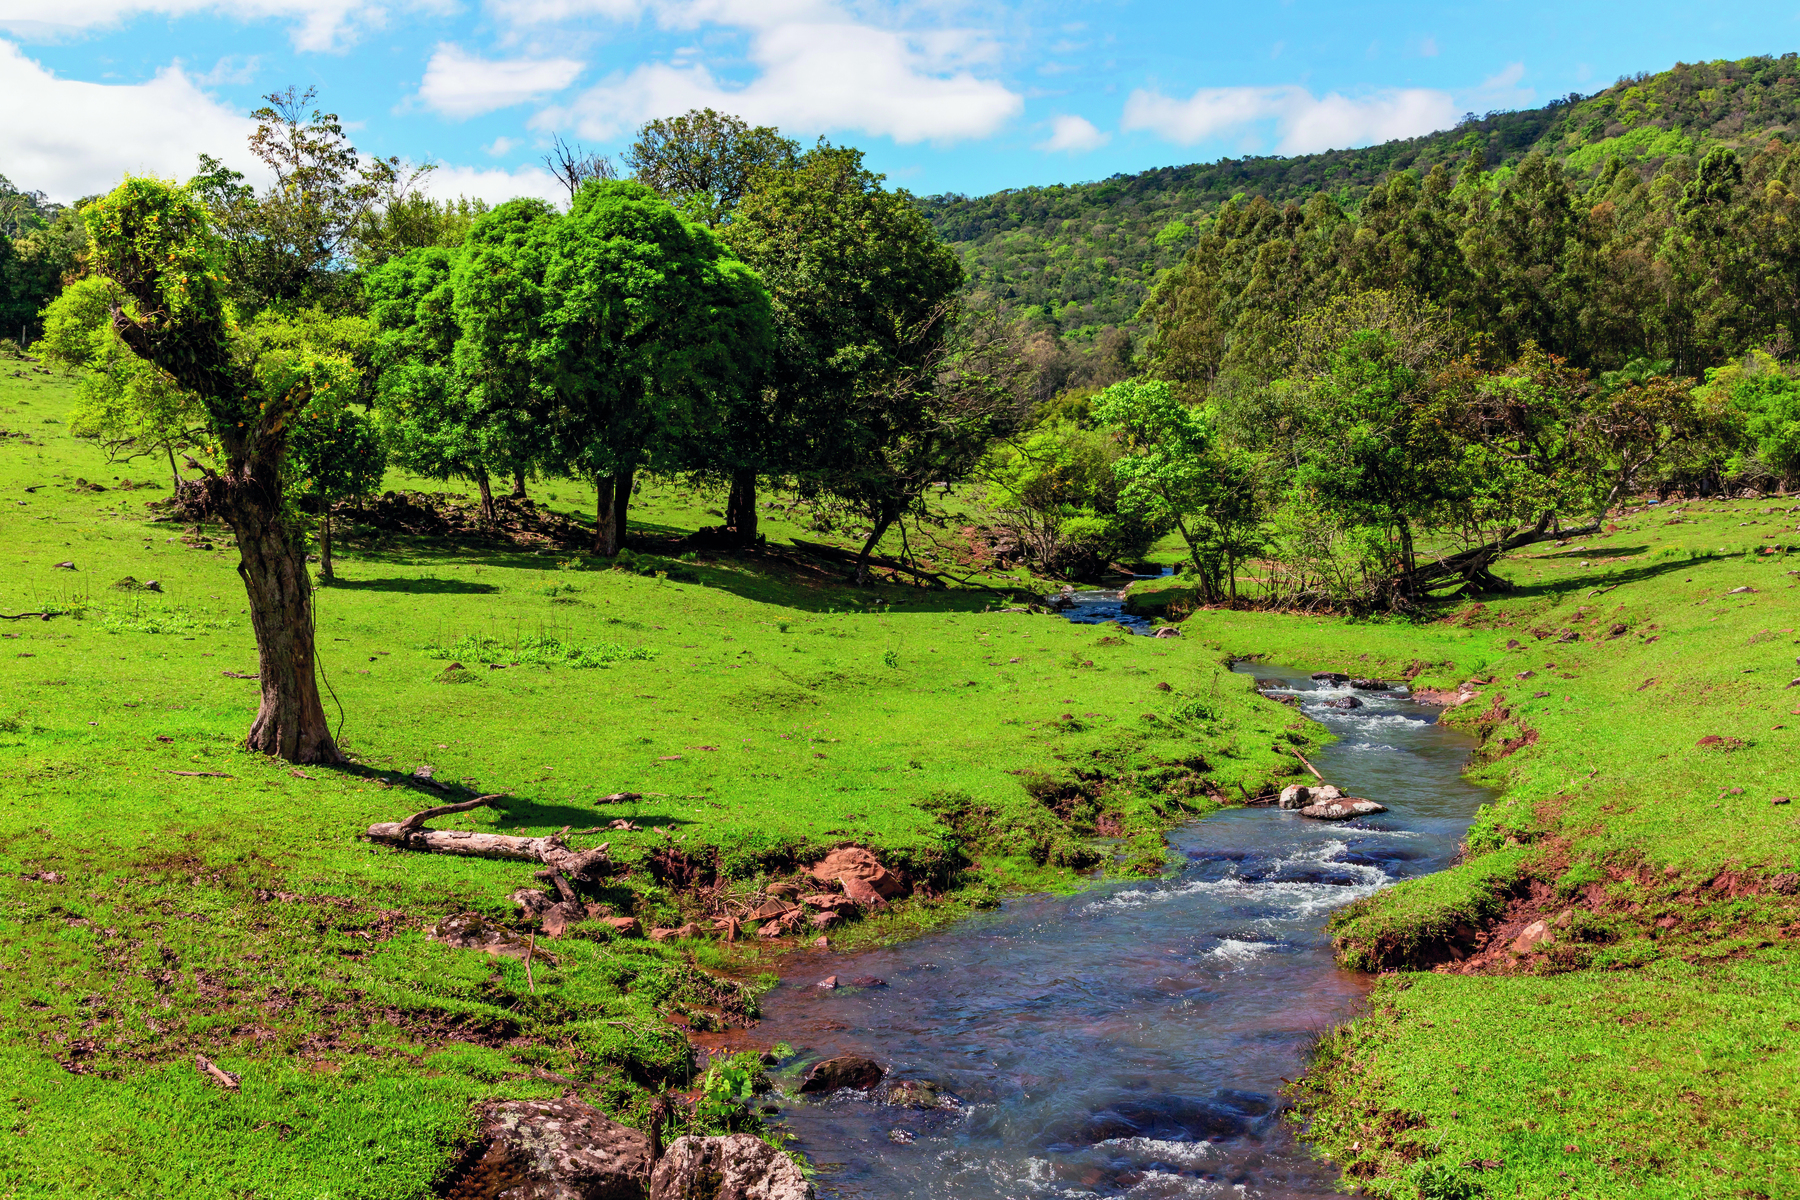 Fotografia. Vista geral de local com vegetação verde, com uma passagem de rio ao centro. Ao fundo, árvores com folhas, morros e no alto, céu em azul com nuvens brancas.